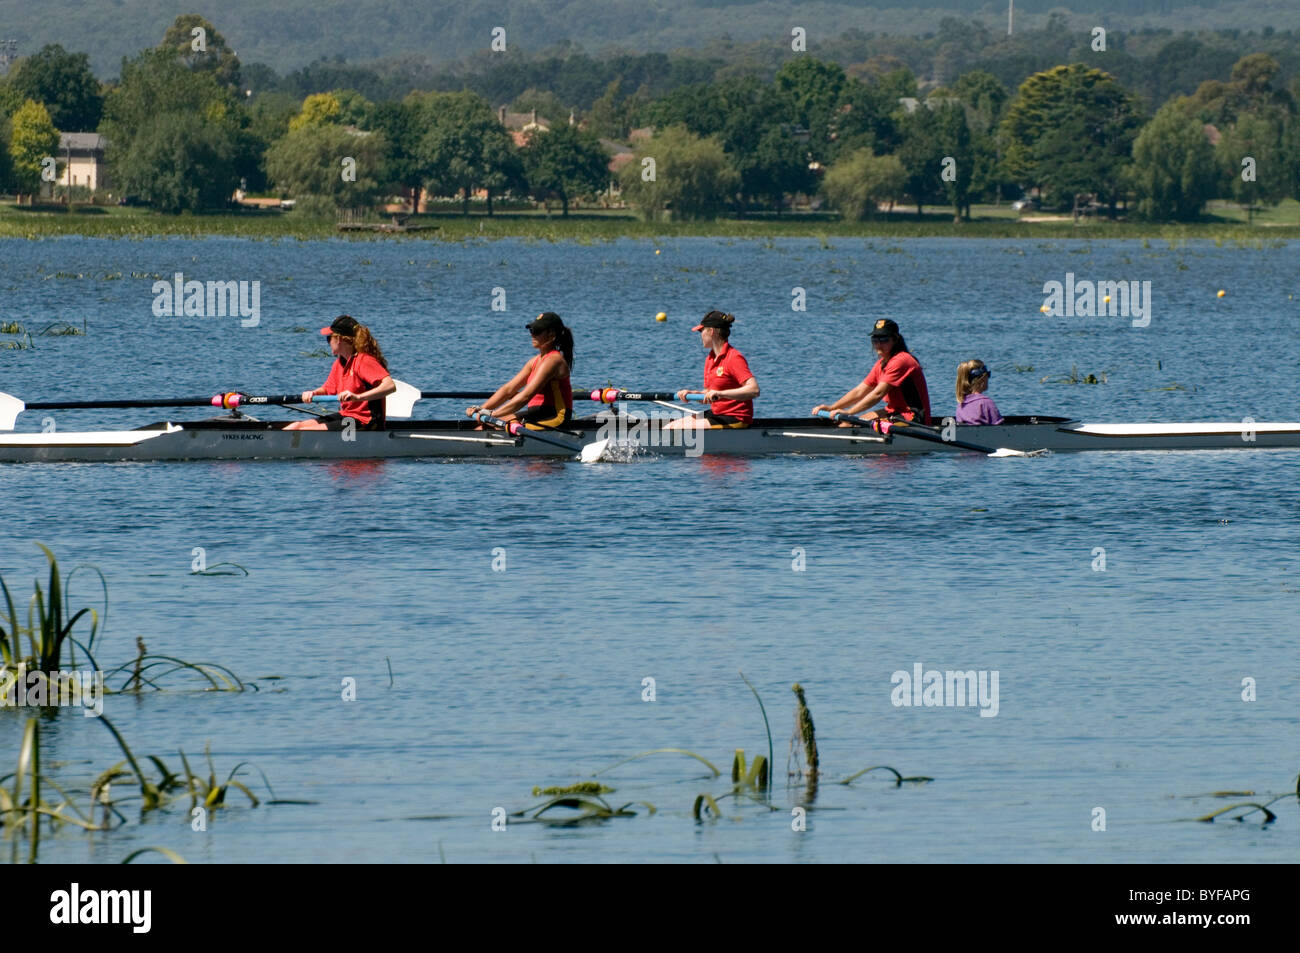 Women rowers sculling on Lake Wendouree, Ballarat, Victoria, Australia Stock Photo